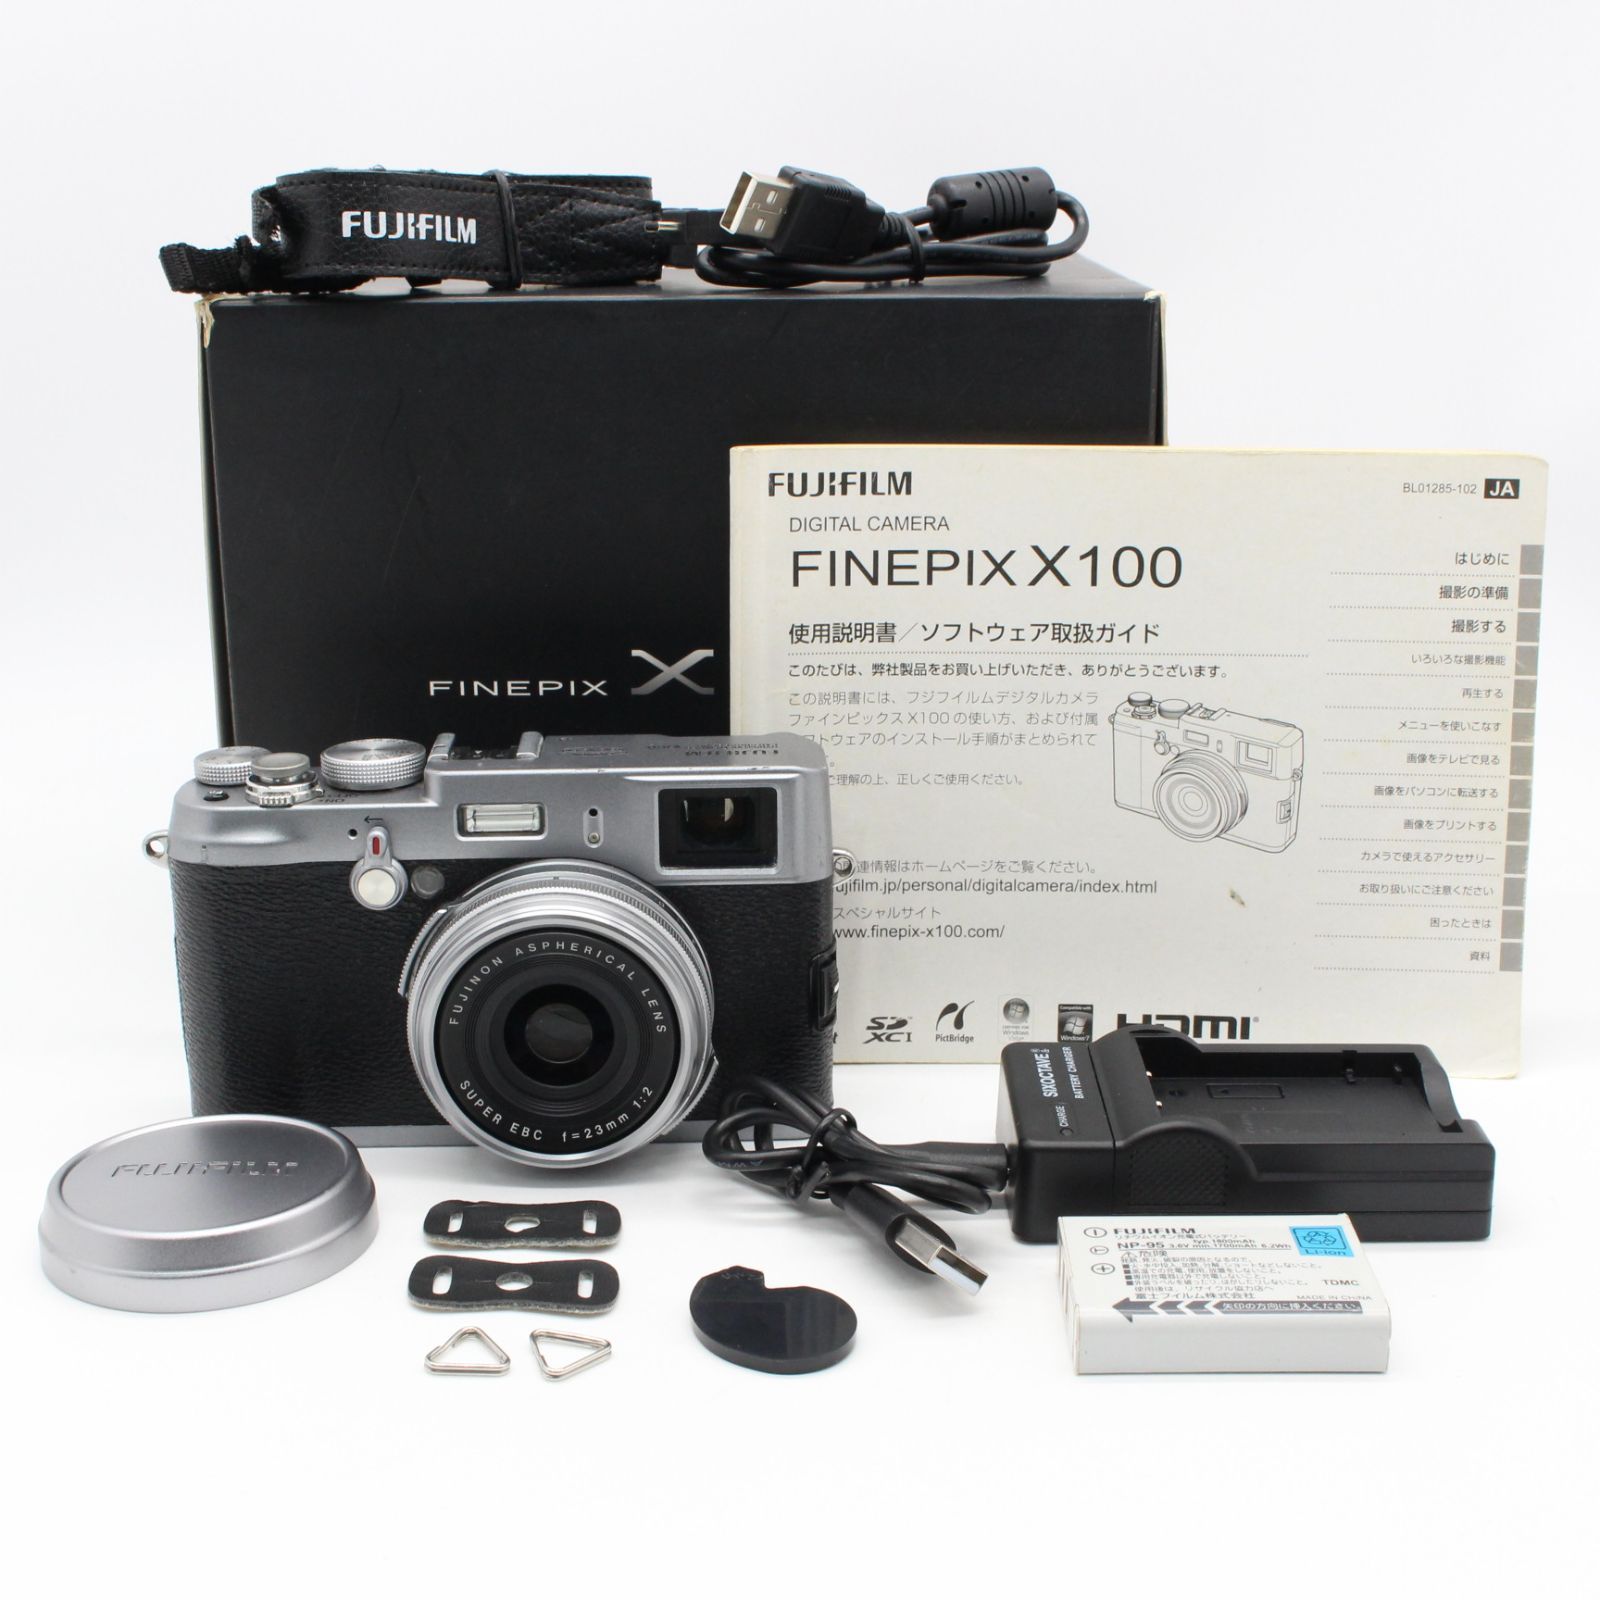 6万円で即決可能でしょうかFujifilm FinePix x100 シルバー デジタルカメラ